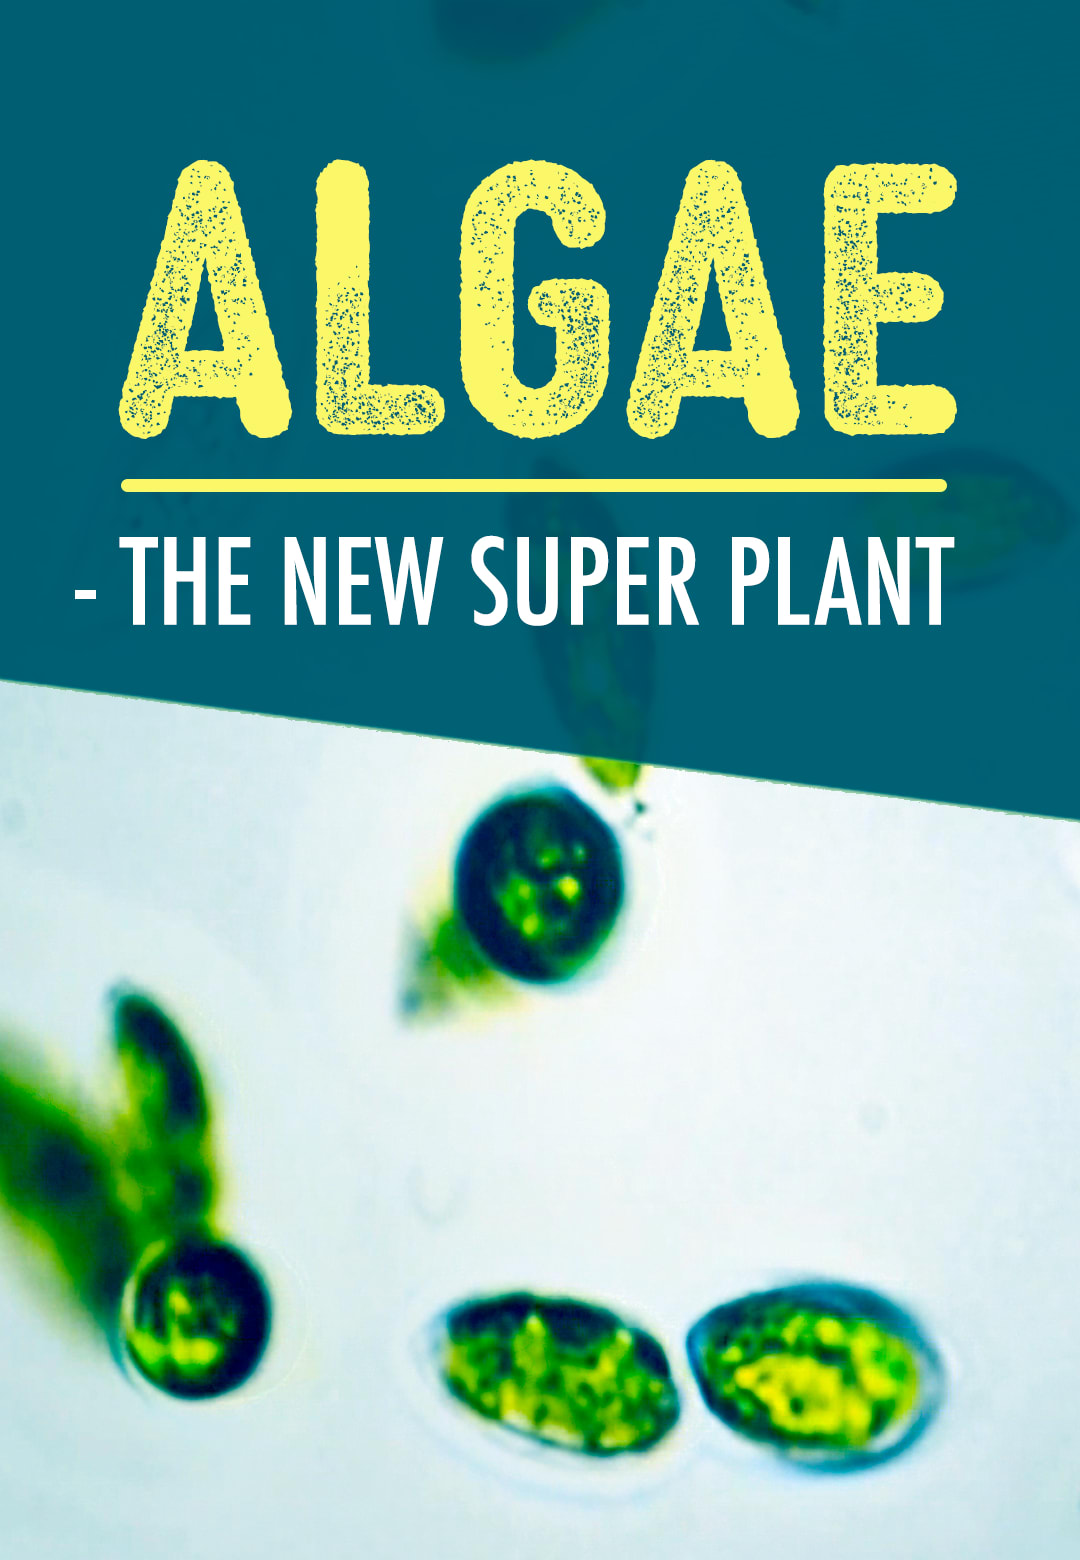 Algen: Ein unbekannter Rohstoff